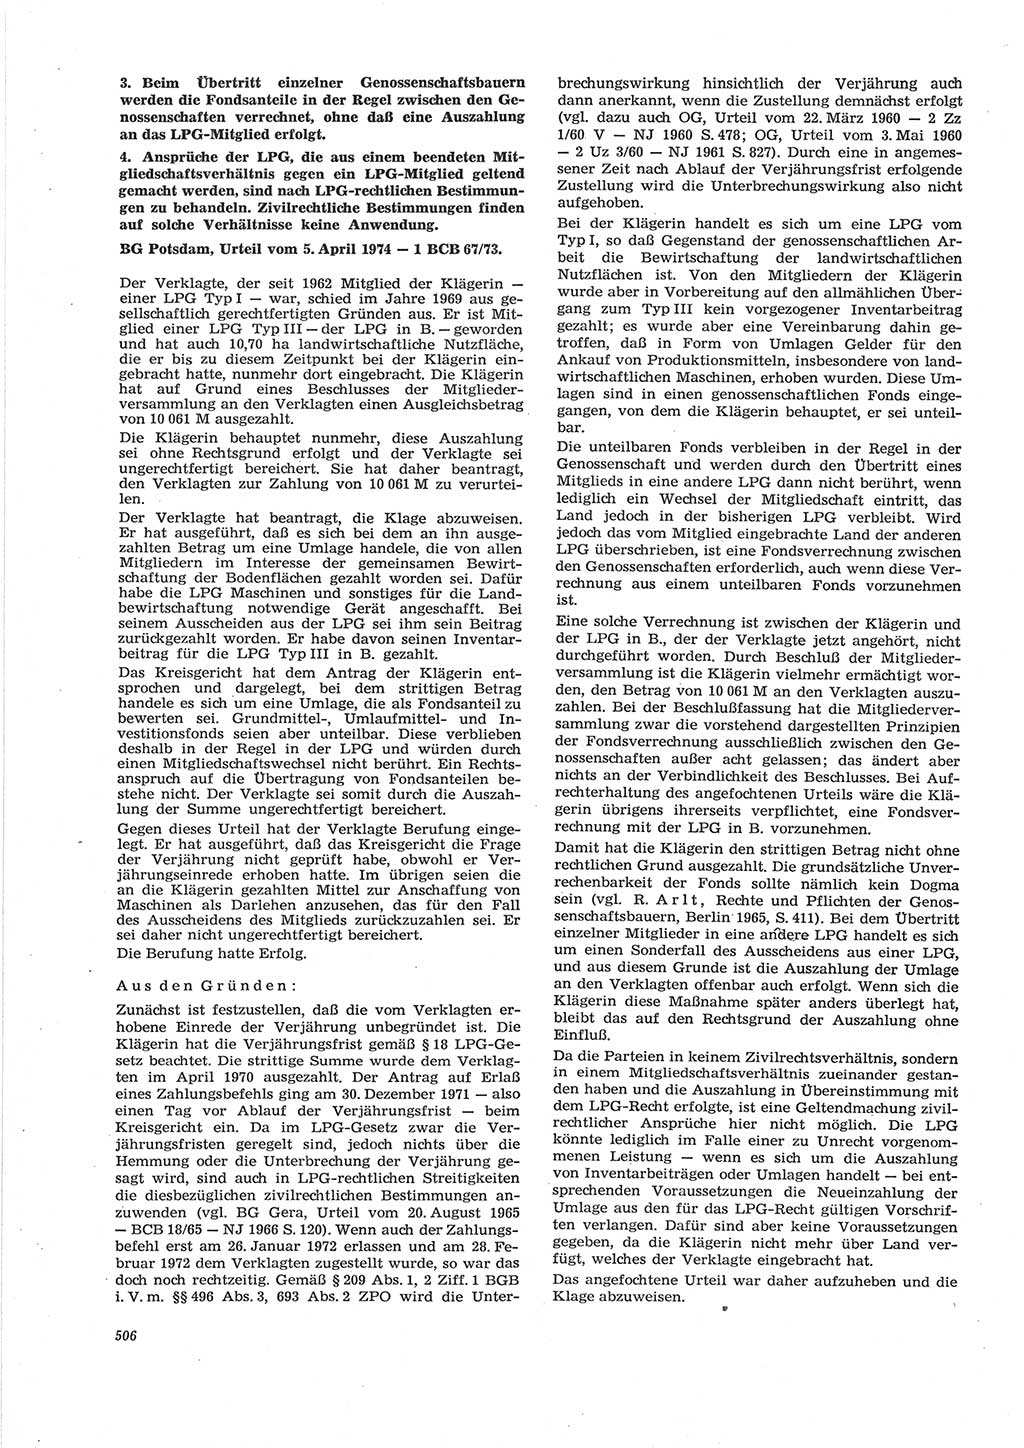 Neue Justiz (NJ), Zeitschrift für Recht und Rechtswissenschaft [Deutsche Demokratische Republik (DDR)], 28. Jahrgang 1974, Seite 506 (NJ DDR 1974, S. 506)